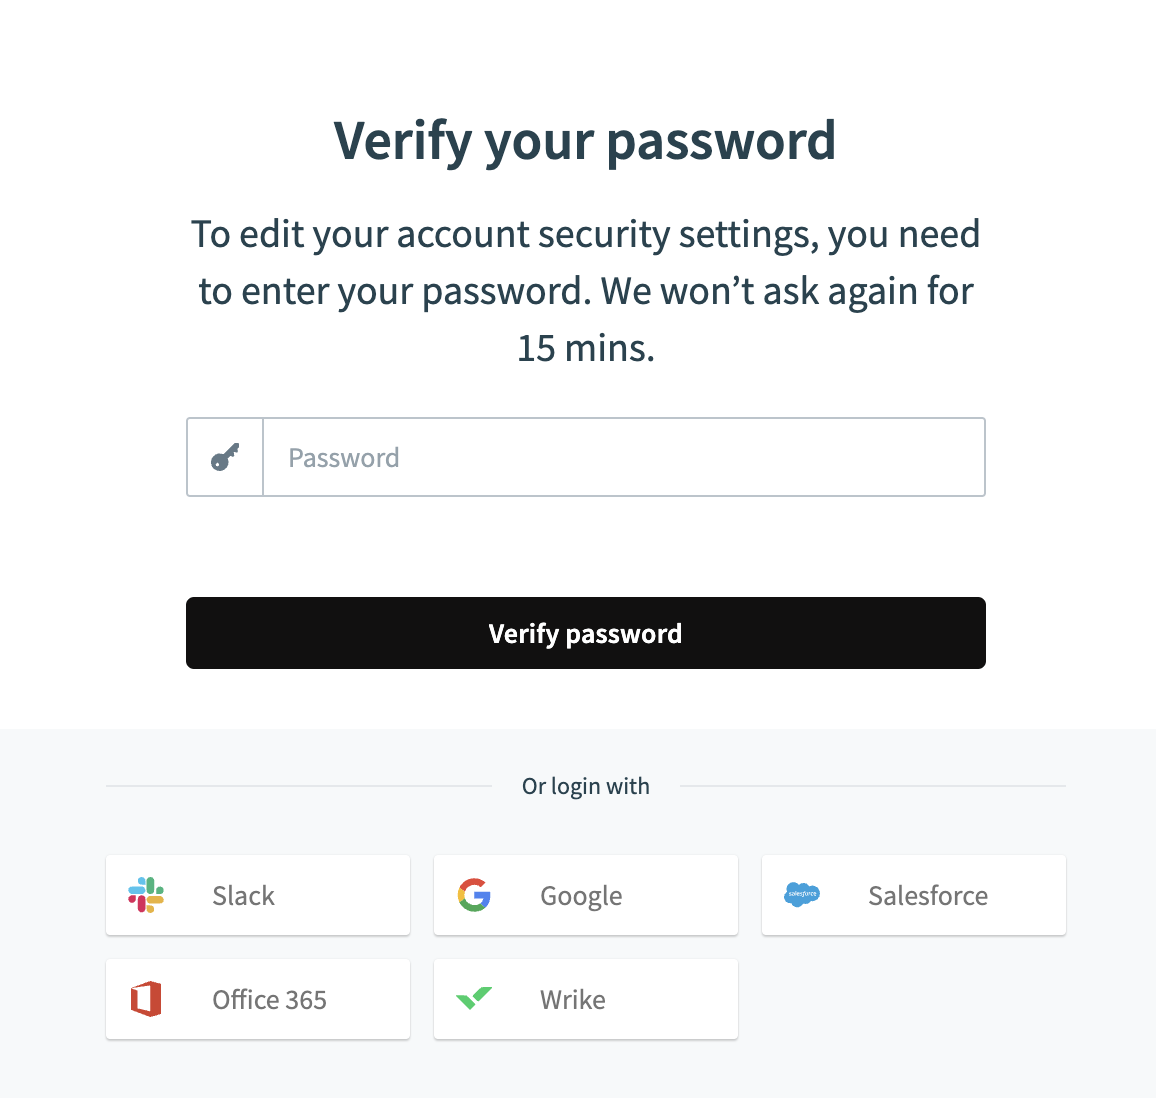 Verify password